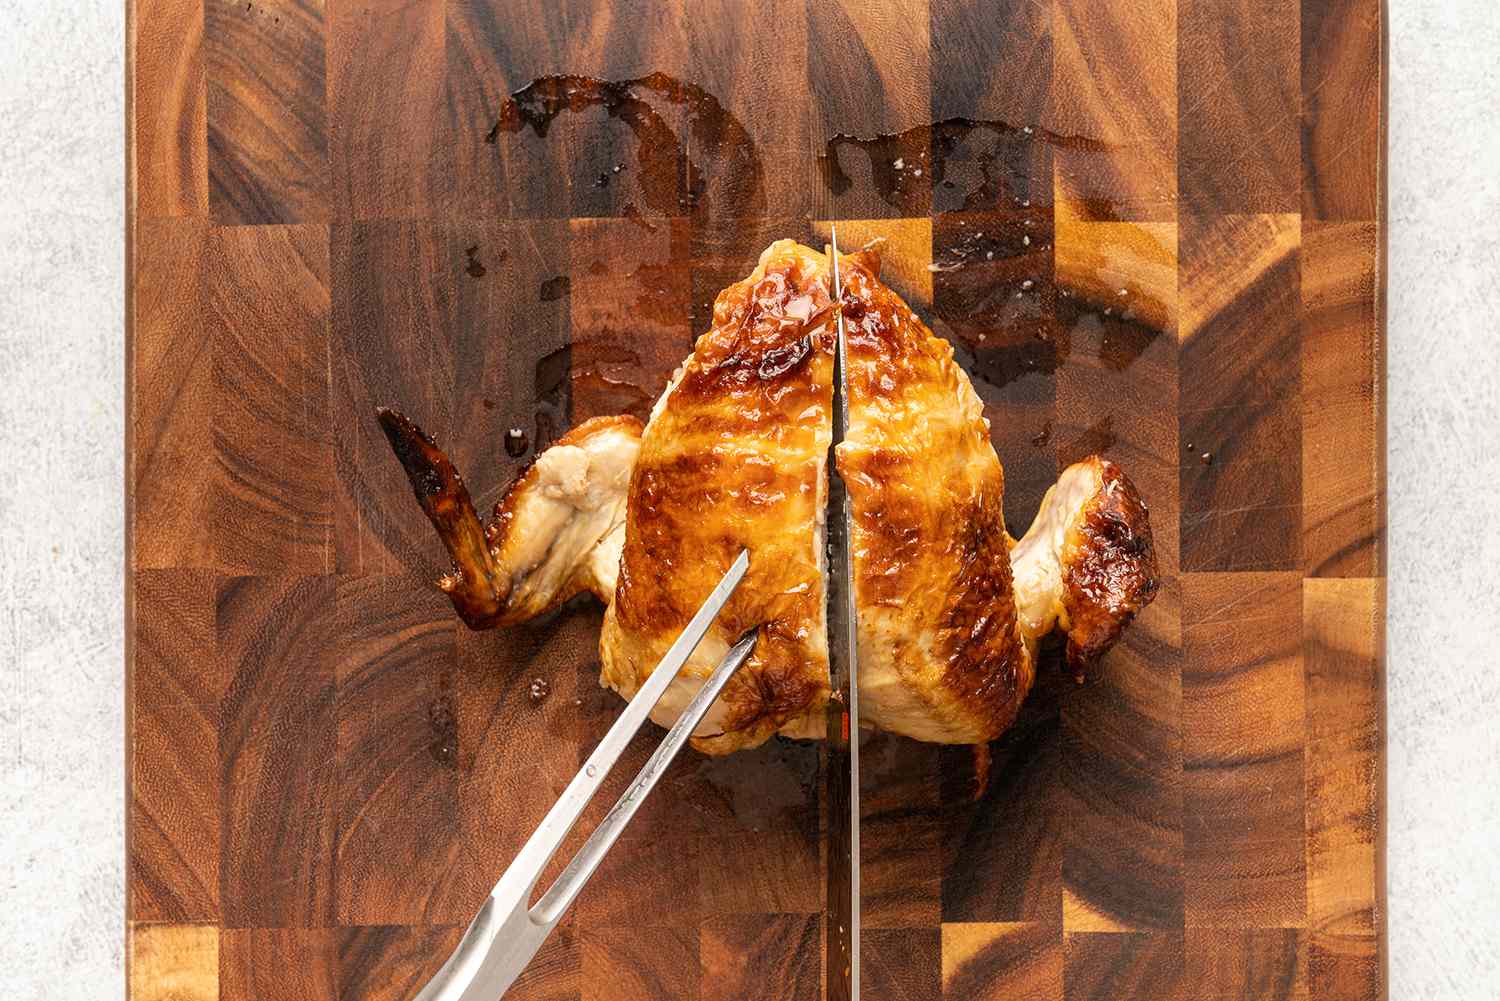 صدر دجاج مشوي كامل وأجنحة على لوح التقطيع ، سكين يقطع العمود الفقري لتقطيع لحم الصدر إلى قطعتين